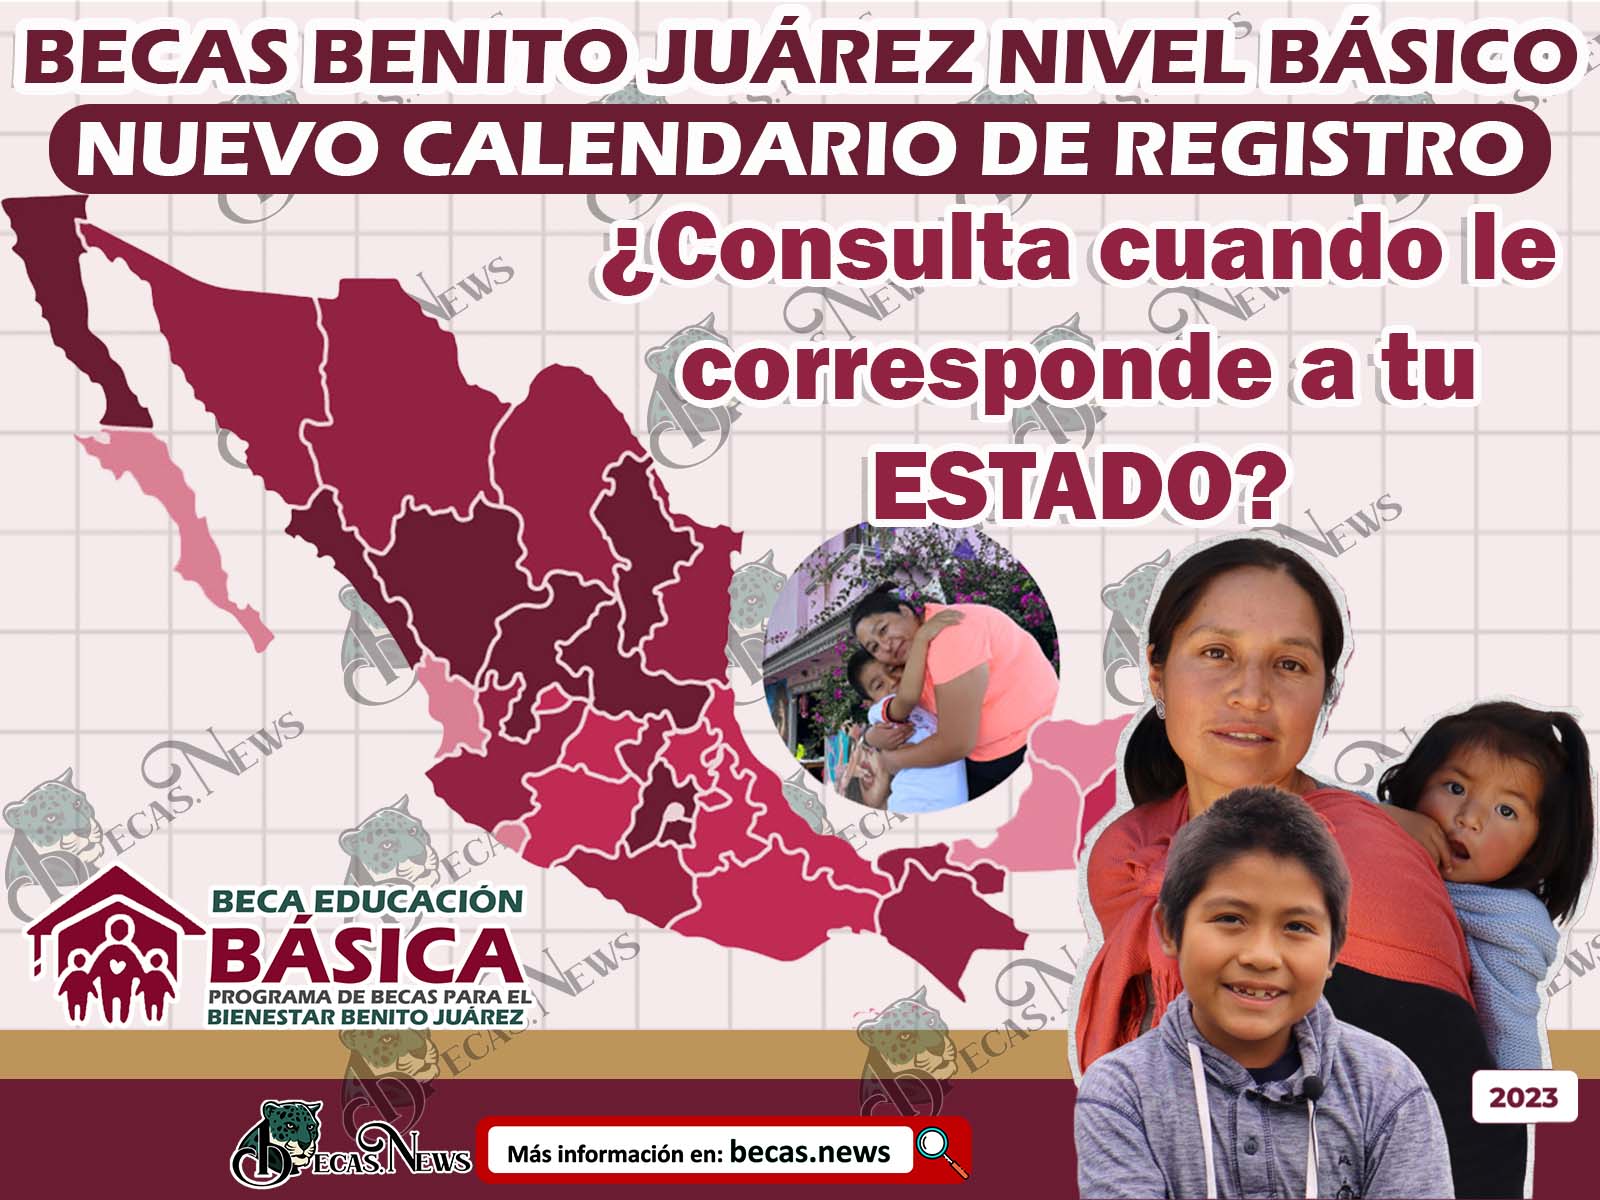 URGENTE Becas Benito Juárez ¡Modifican Calendario de Registro! Aquí están las Nuevas Fechas